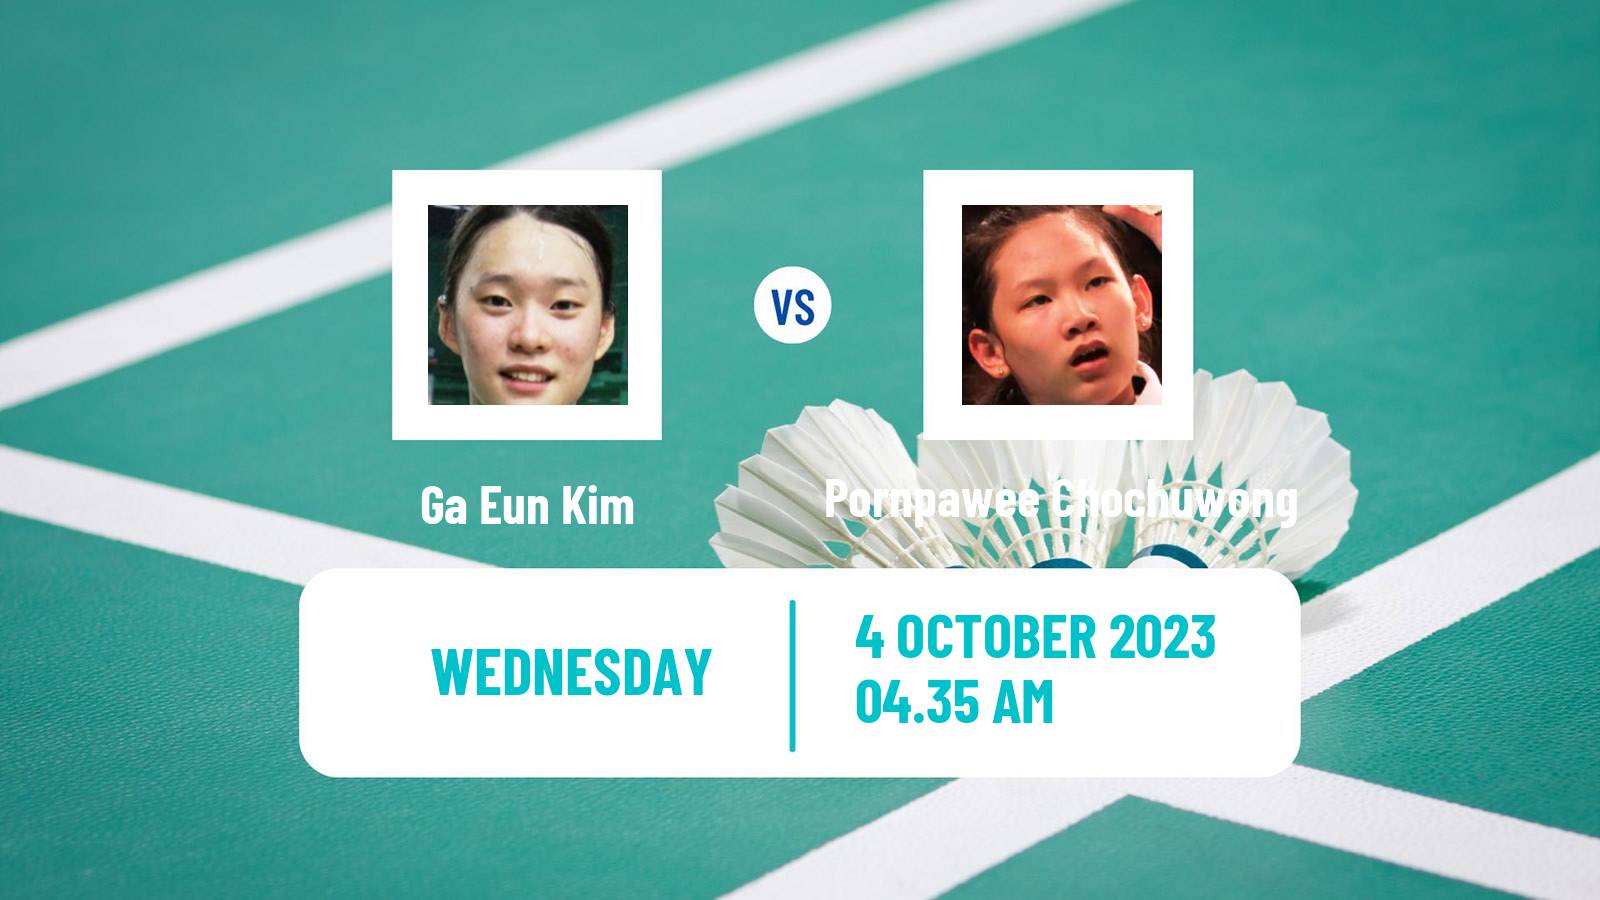 Badminton Asian Games Women Ga Eun Kim - Pornpawee Chochuwong